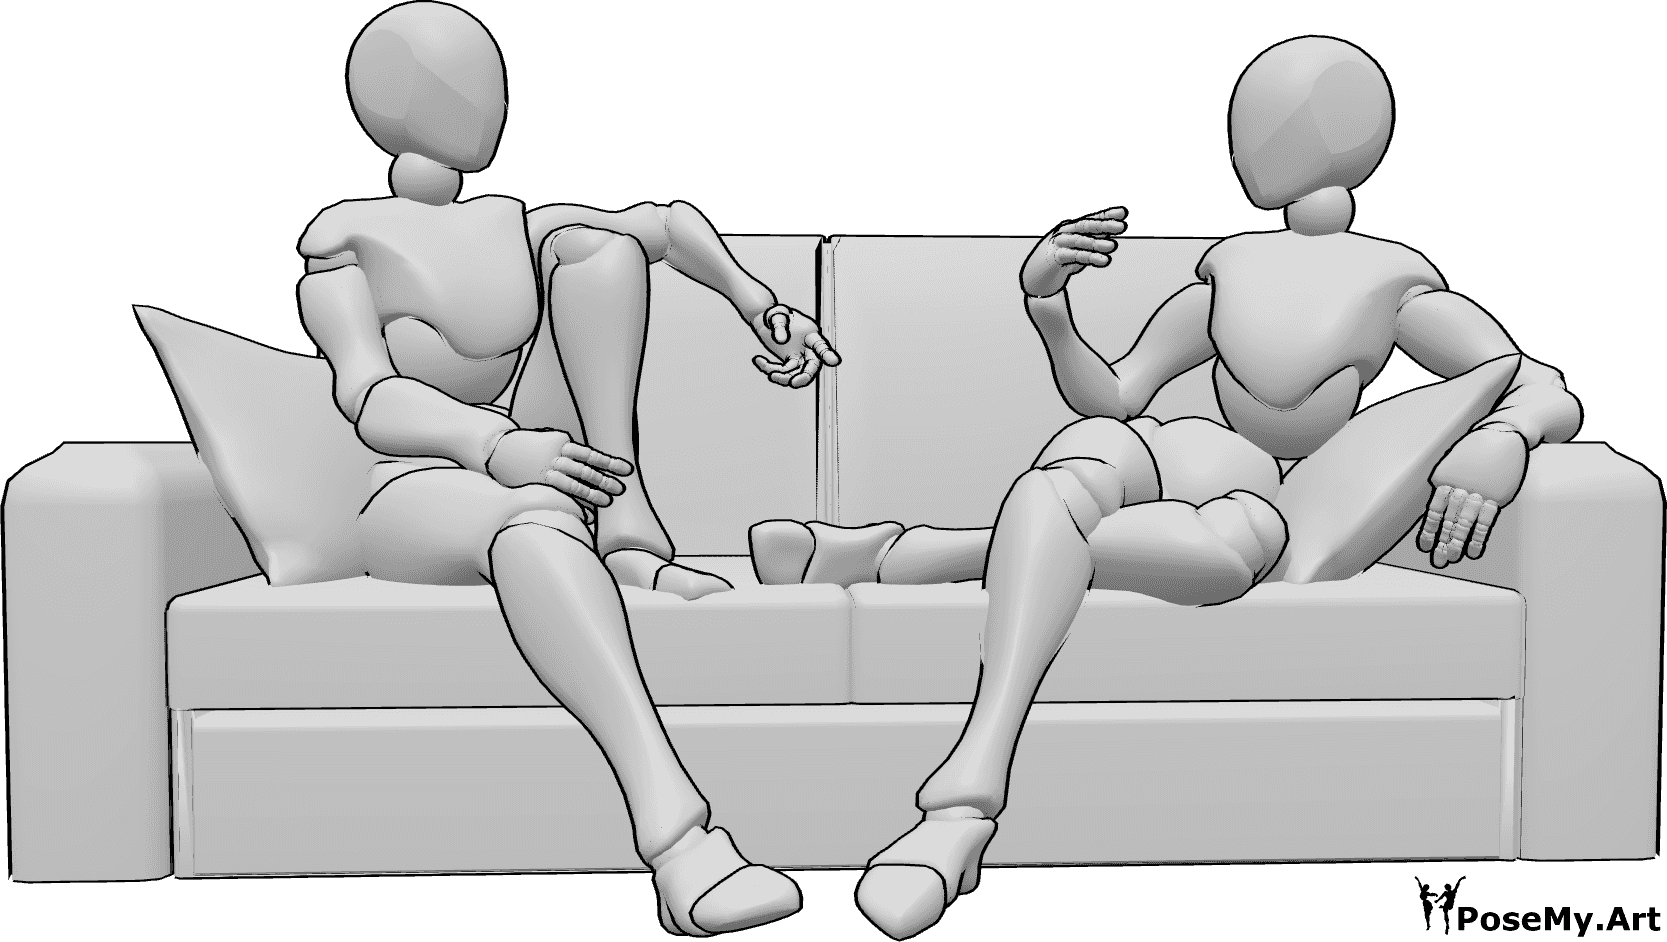 Referencia de poses- Dos mujeres sentadas posan - Dos mujeres están sentadas cómodamente en el sofá y hablando